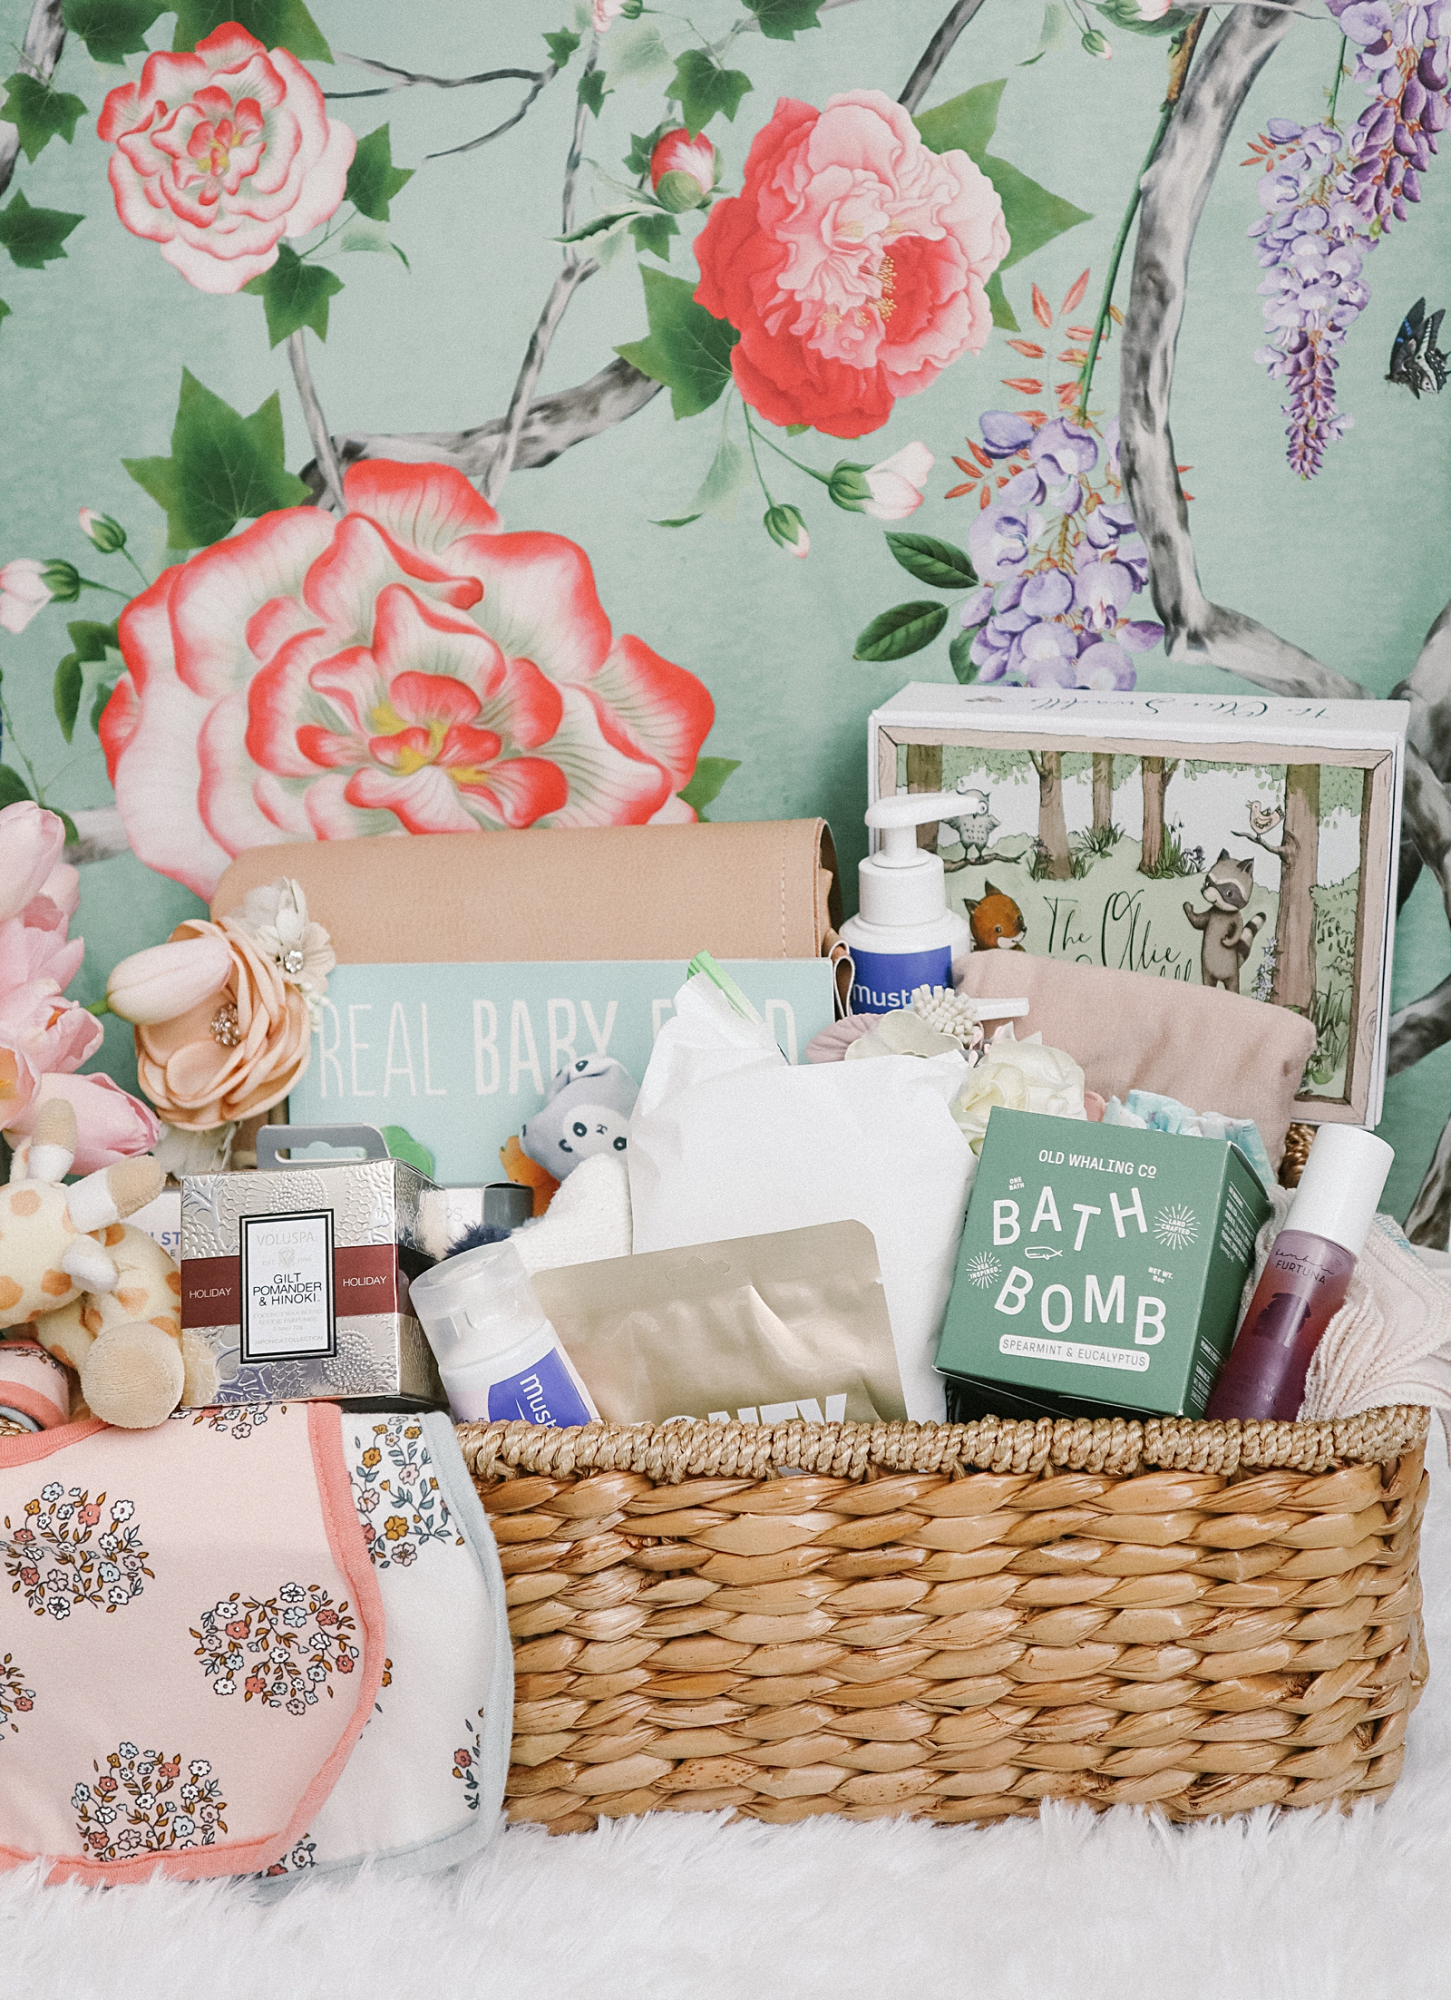 DIY Babyshower Newborn Gift Basket Ideas